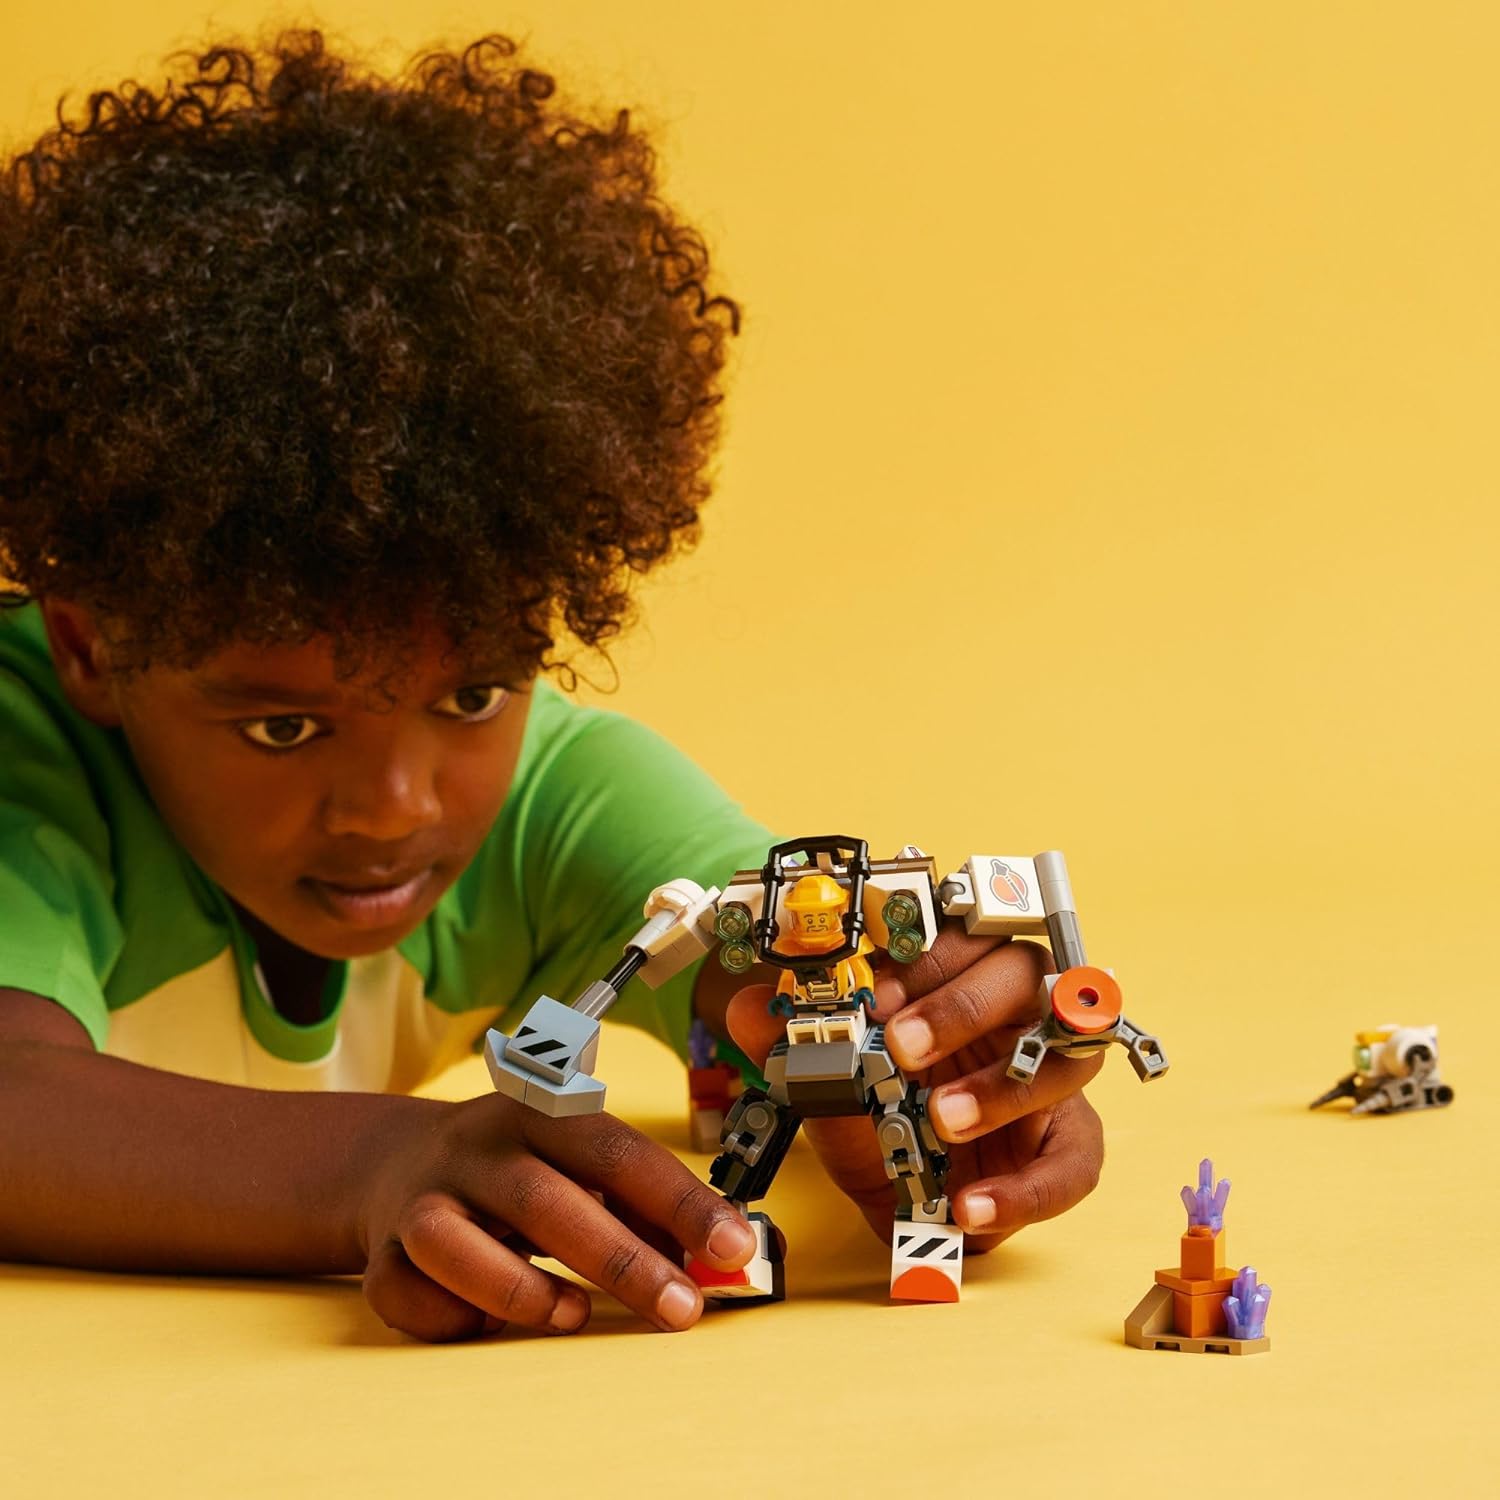 レゴ LEGO City Space Construction Mech Suit Building Set, Fun Space Toy for Kids Ages 6 and Up, Space Gift Idea for Boys and Girls Who Love Imaginative Play, Includes Pilot Minifigure and Robot Toy, 60428レゴ 2